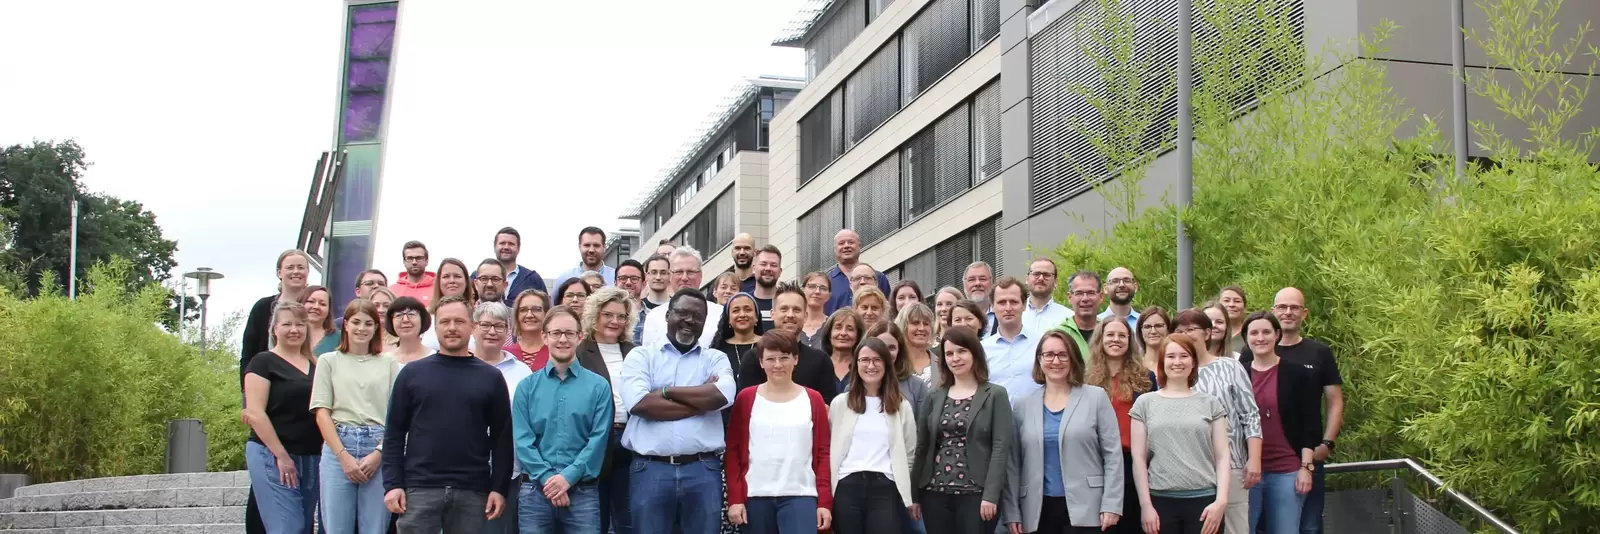 Teambild Mitarbeiter Energieagentur Rheinland-Pfalz